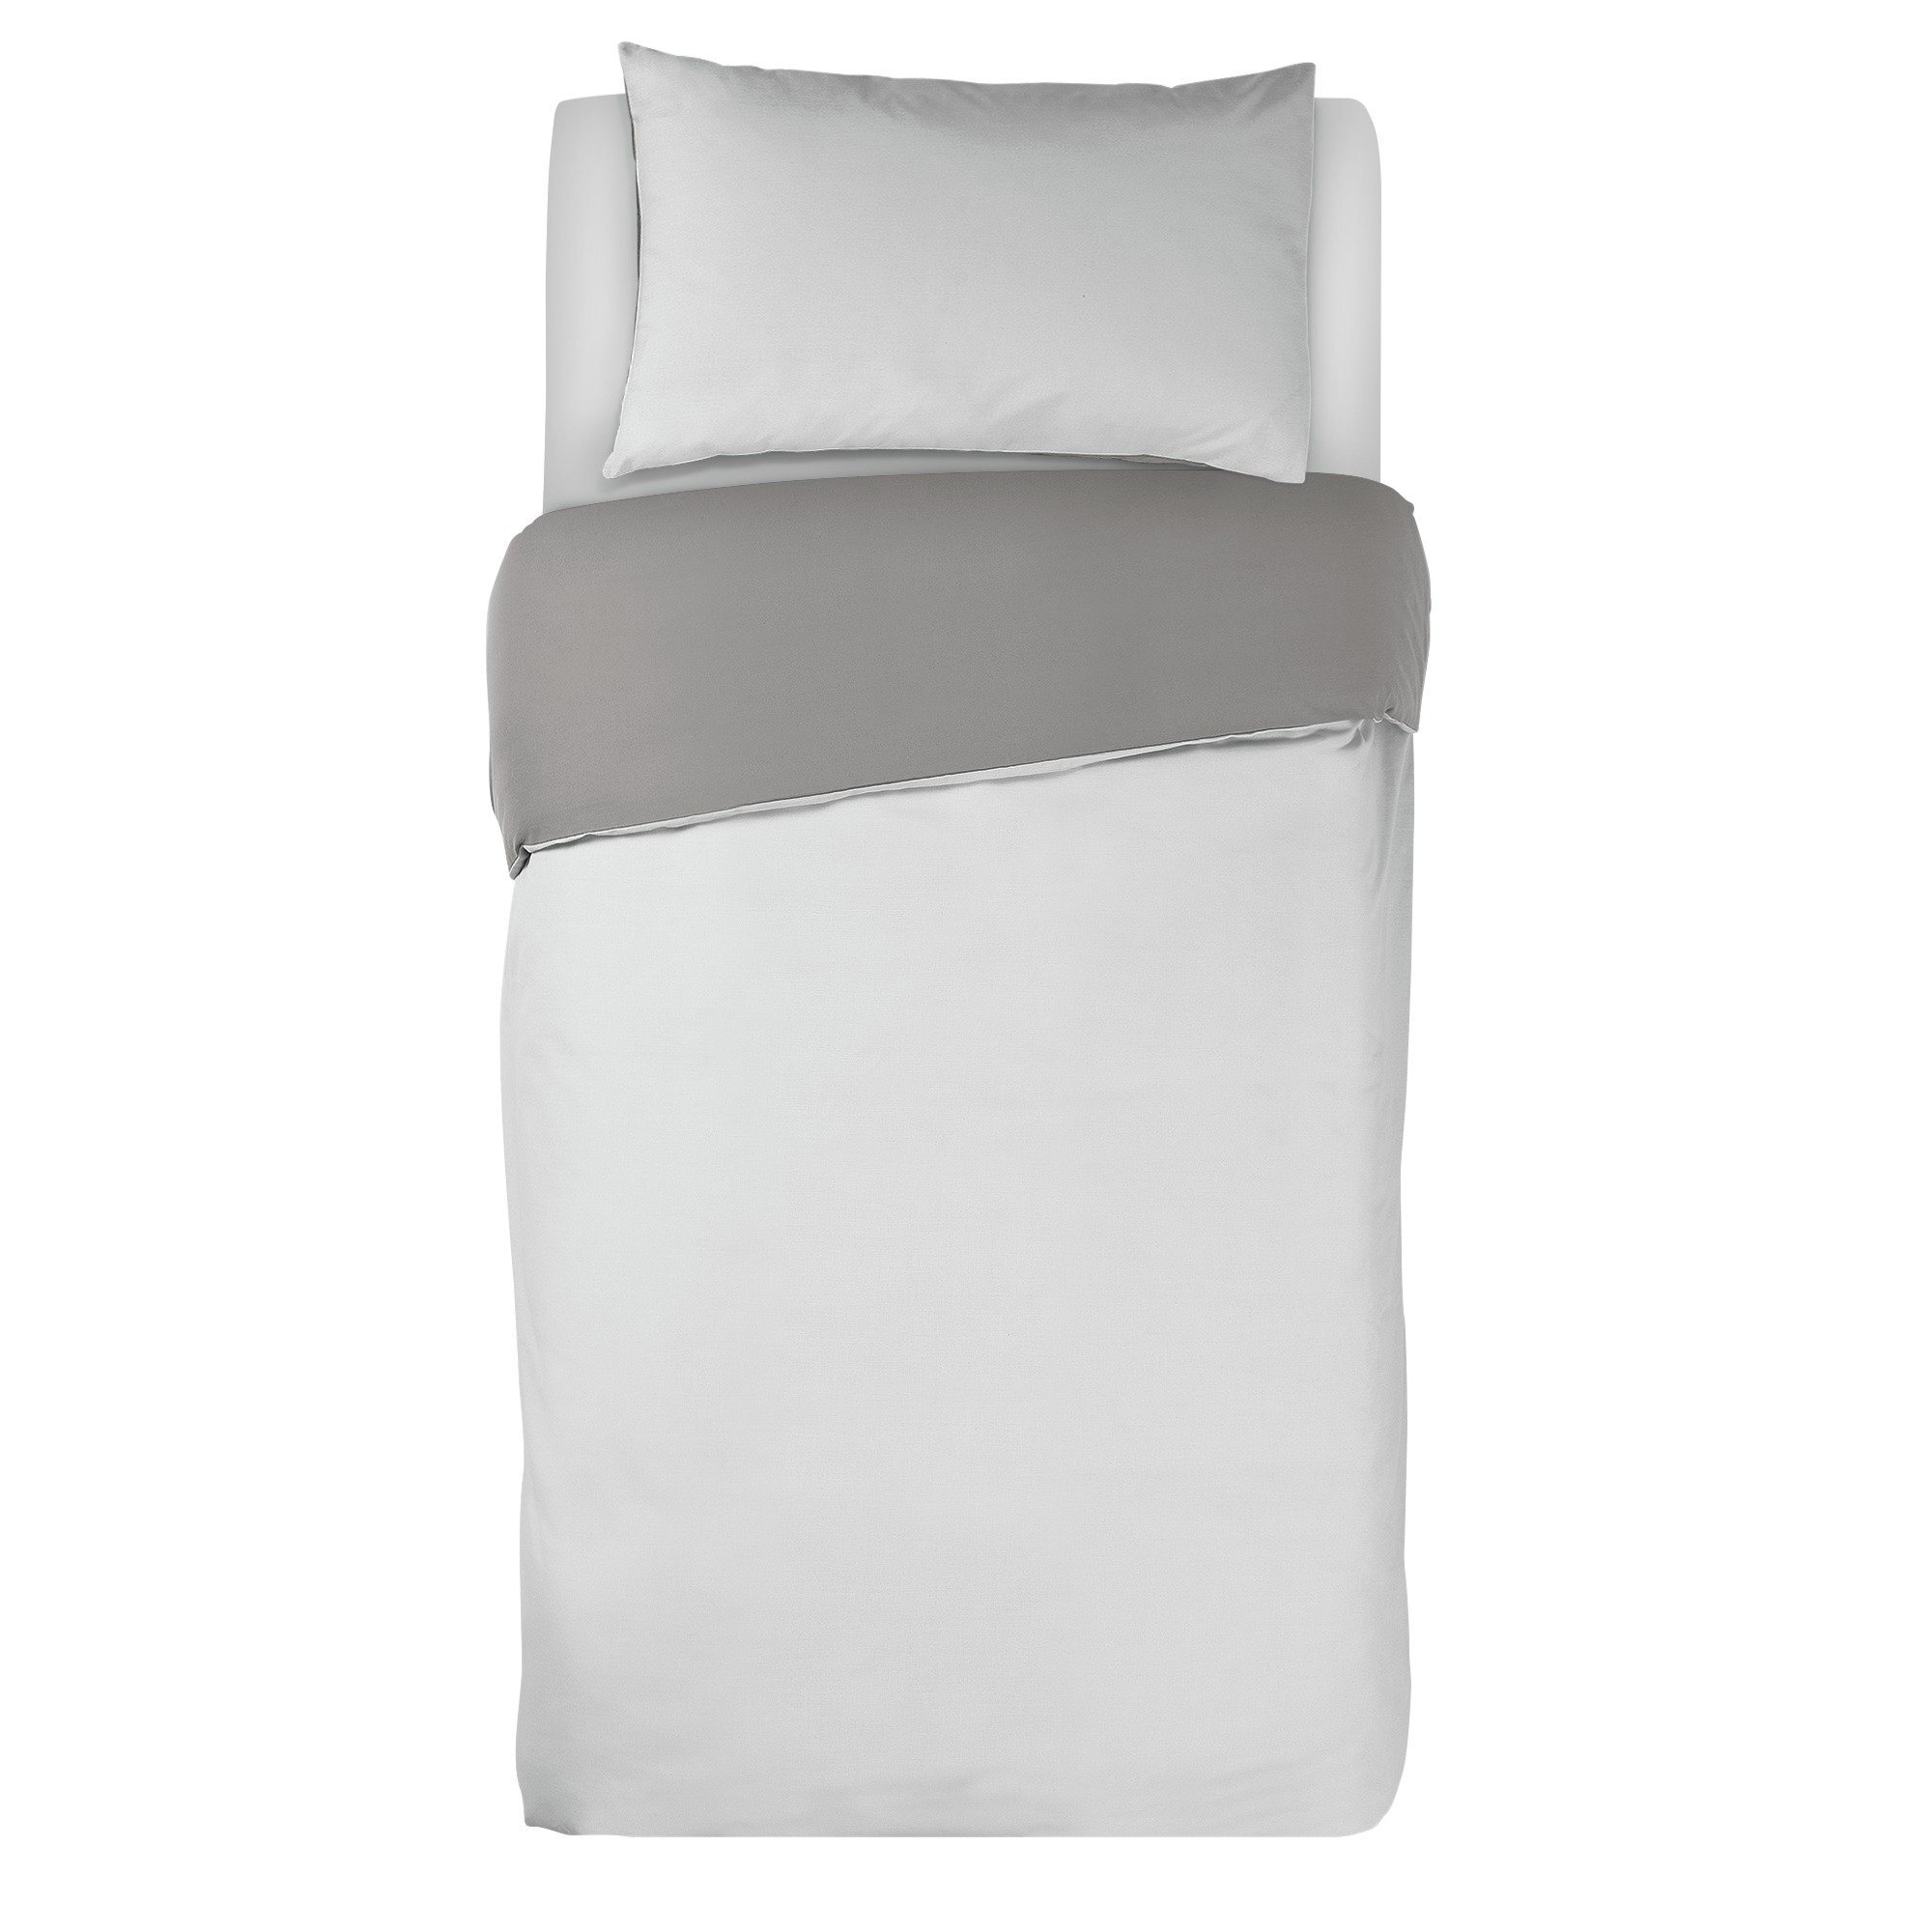 Habitat Easycare Two Tone White & Grey Bedding Set - Single - image 1